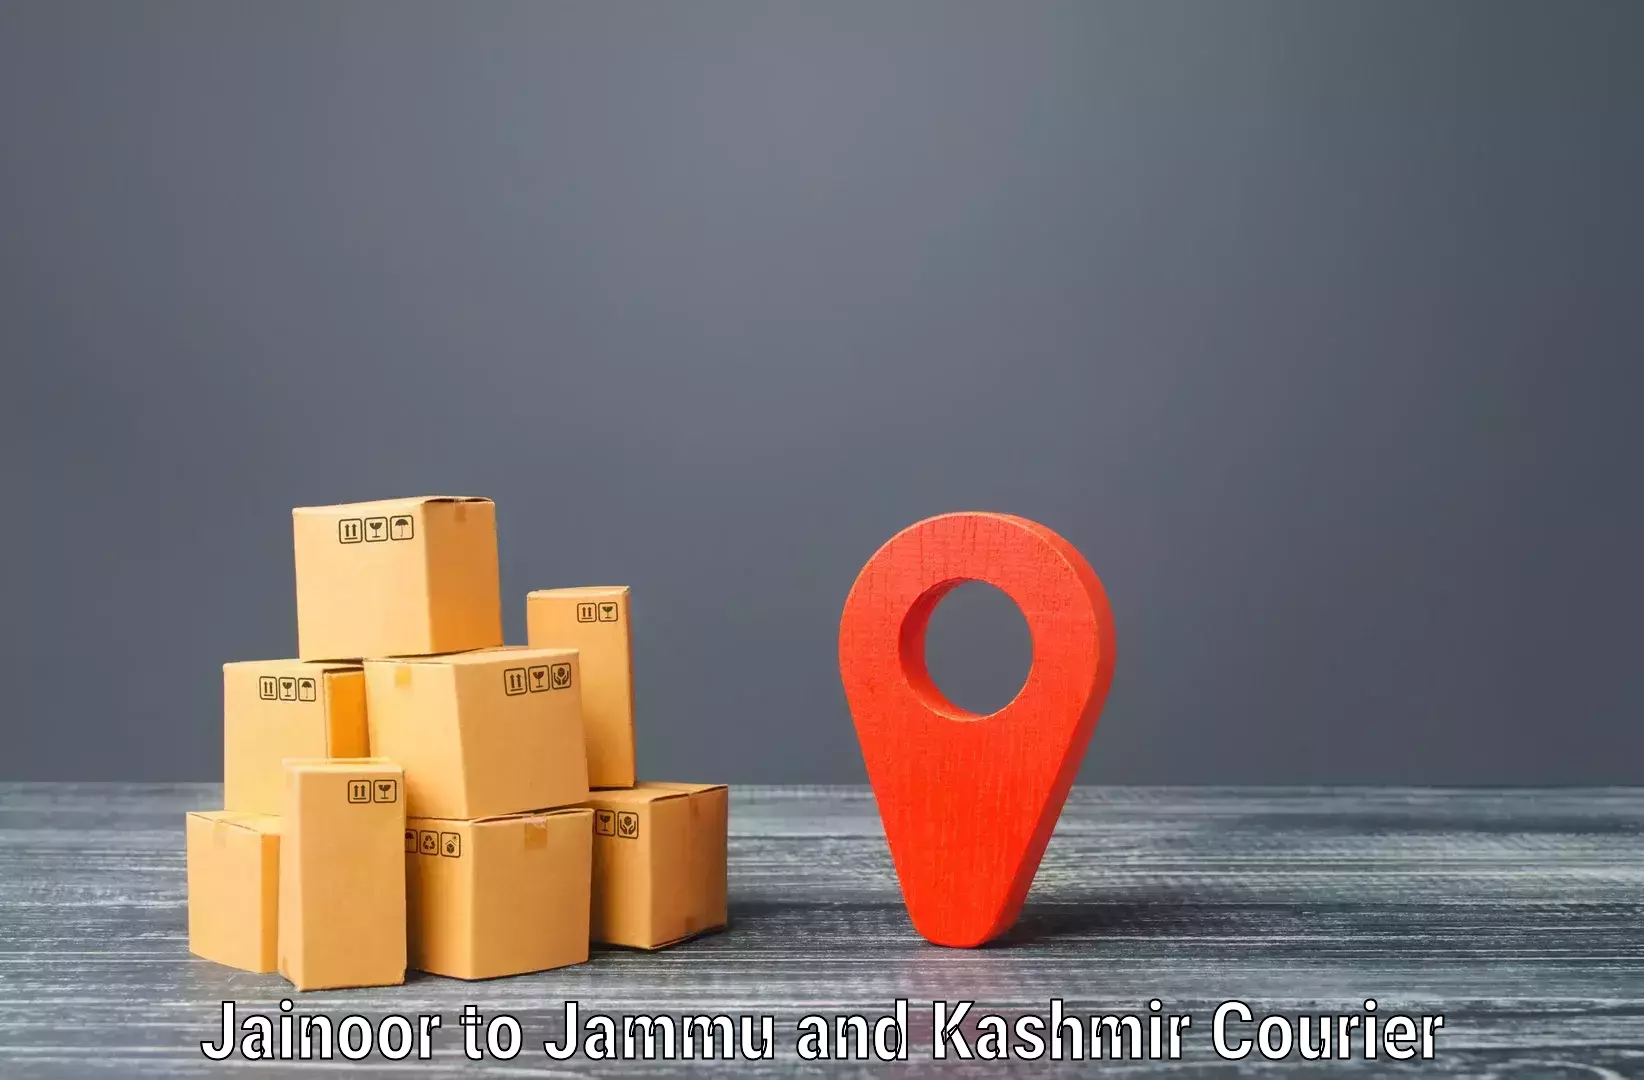 Doorstep delivery service Jainoor to Kargil